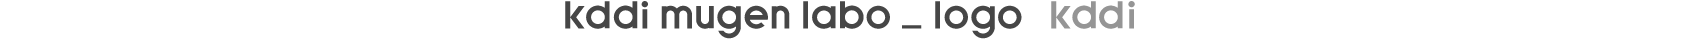 KDDI MugenLabo_Logo